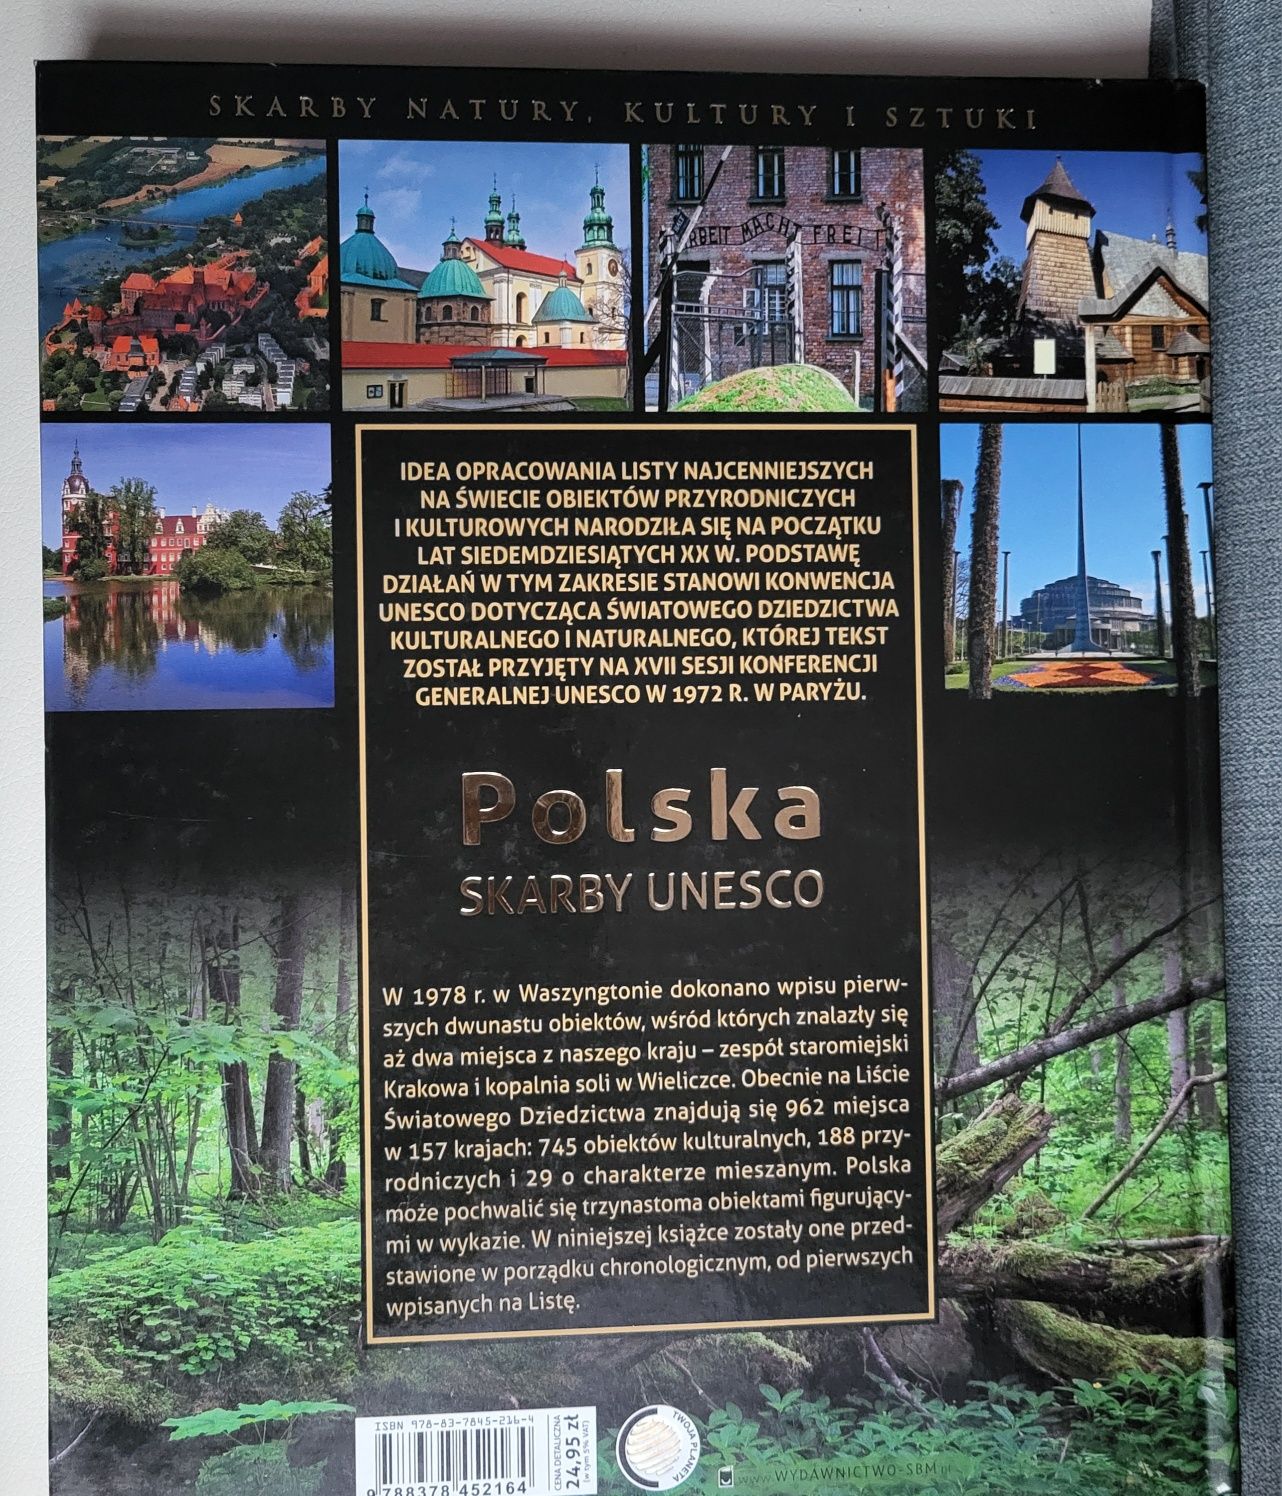 Album Polska skarby UNESCO